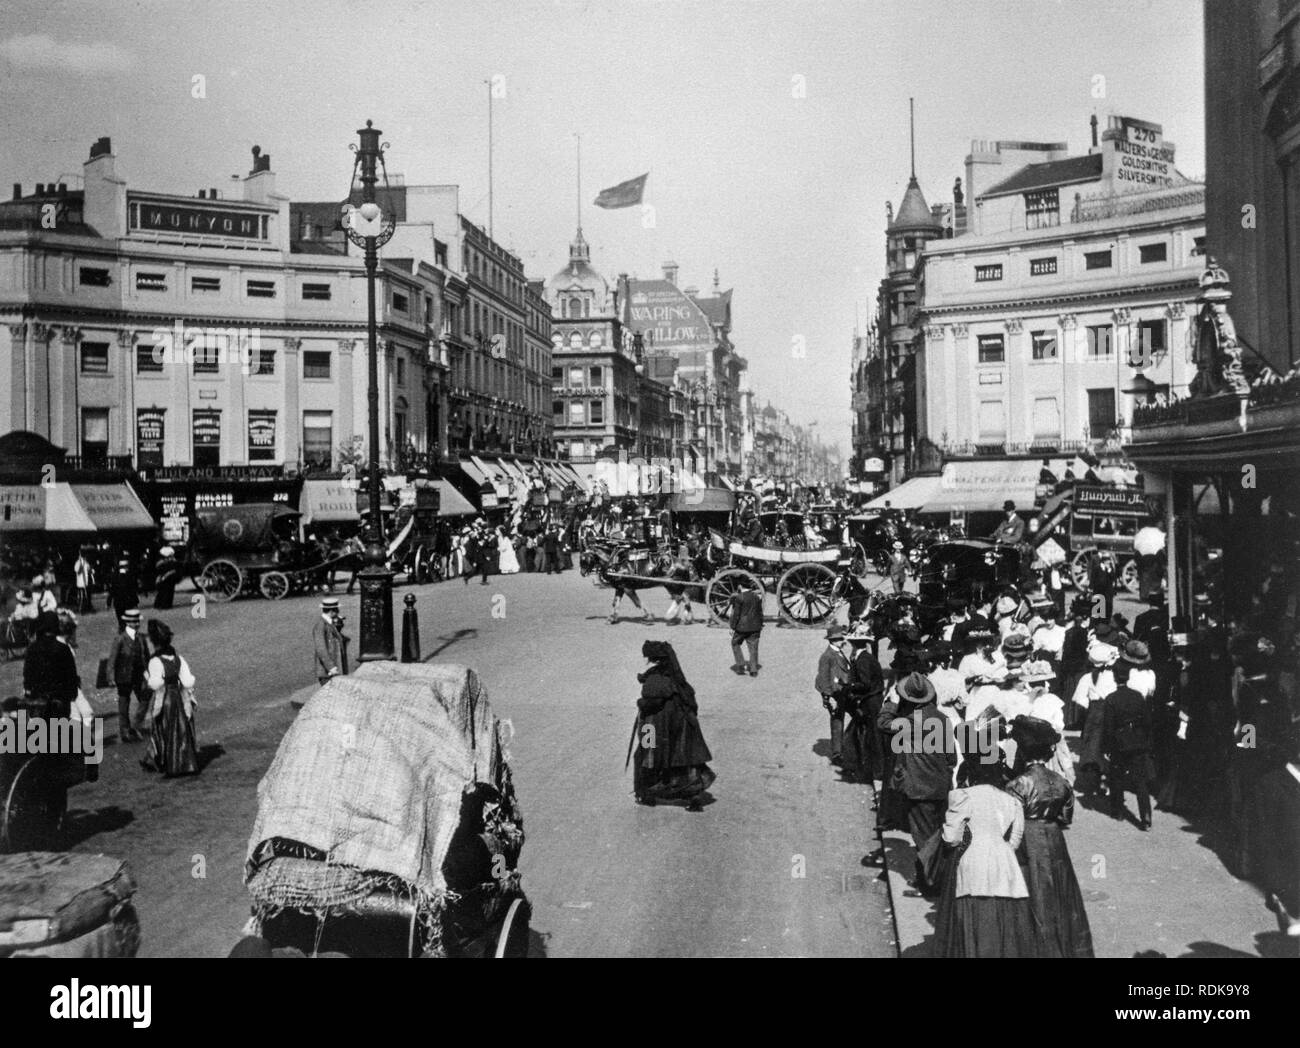 Späten viktorianischen London. Blick auf die Oxford Street mit der berühmten Waring und Gillow Möbelhersteller store in der Ferne. Die Straßen sind voll von Menschen und Pferdewagen. Stockfoto